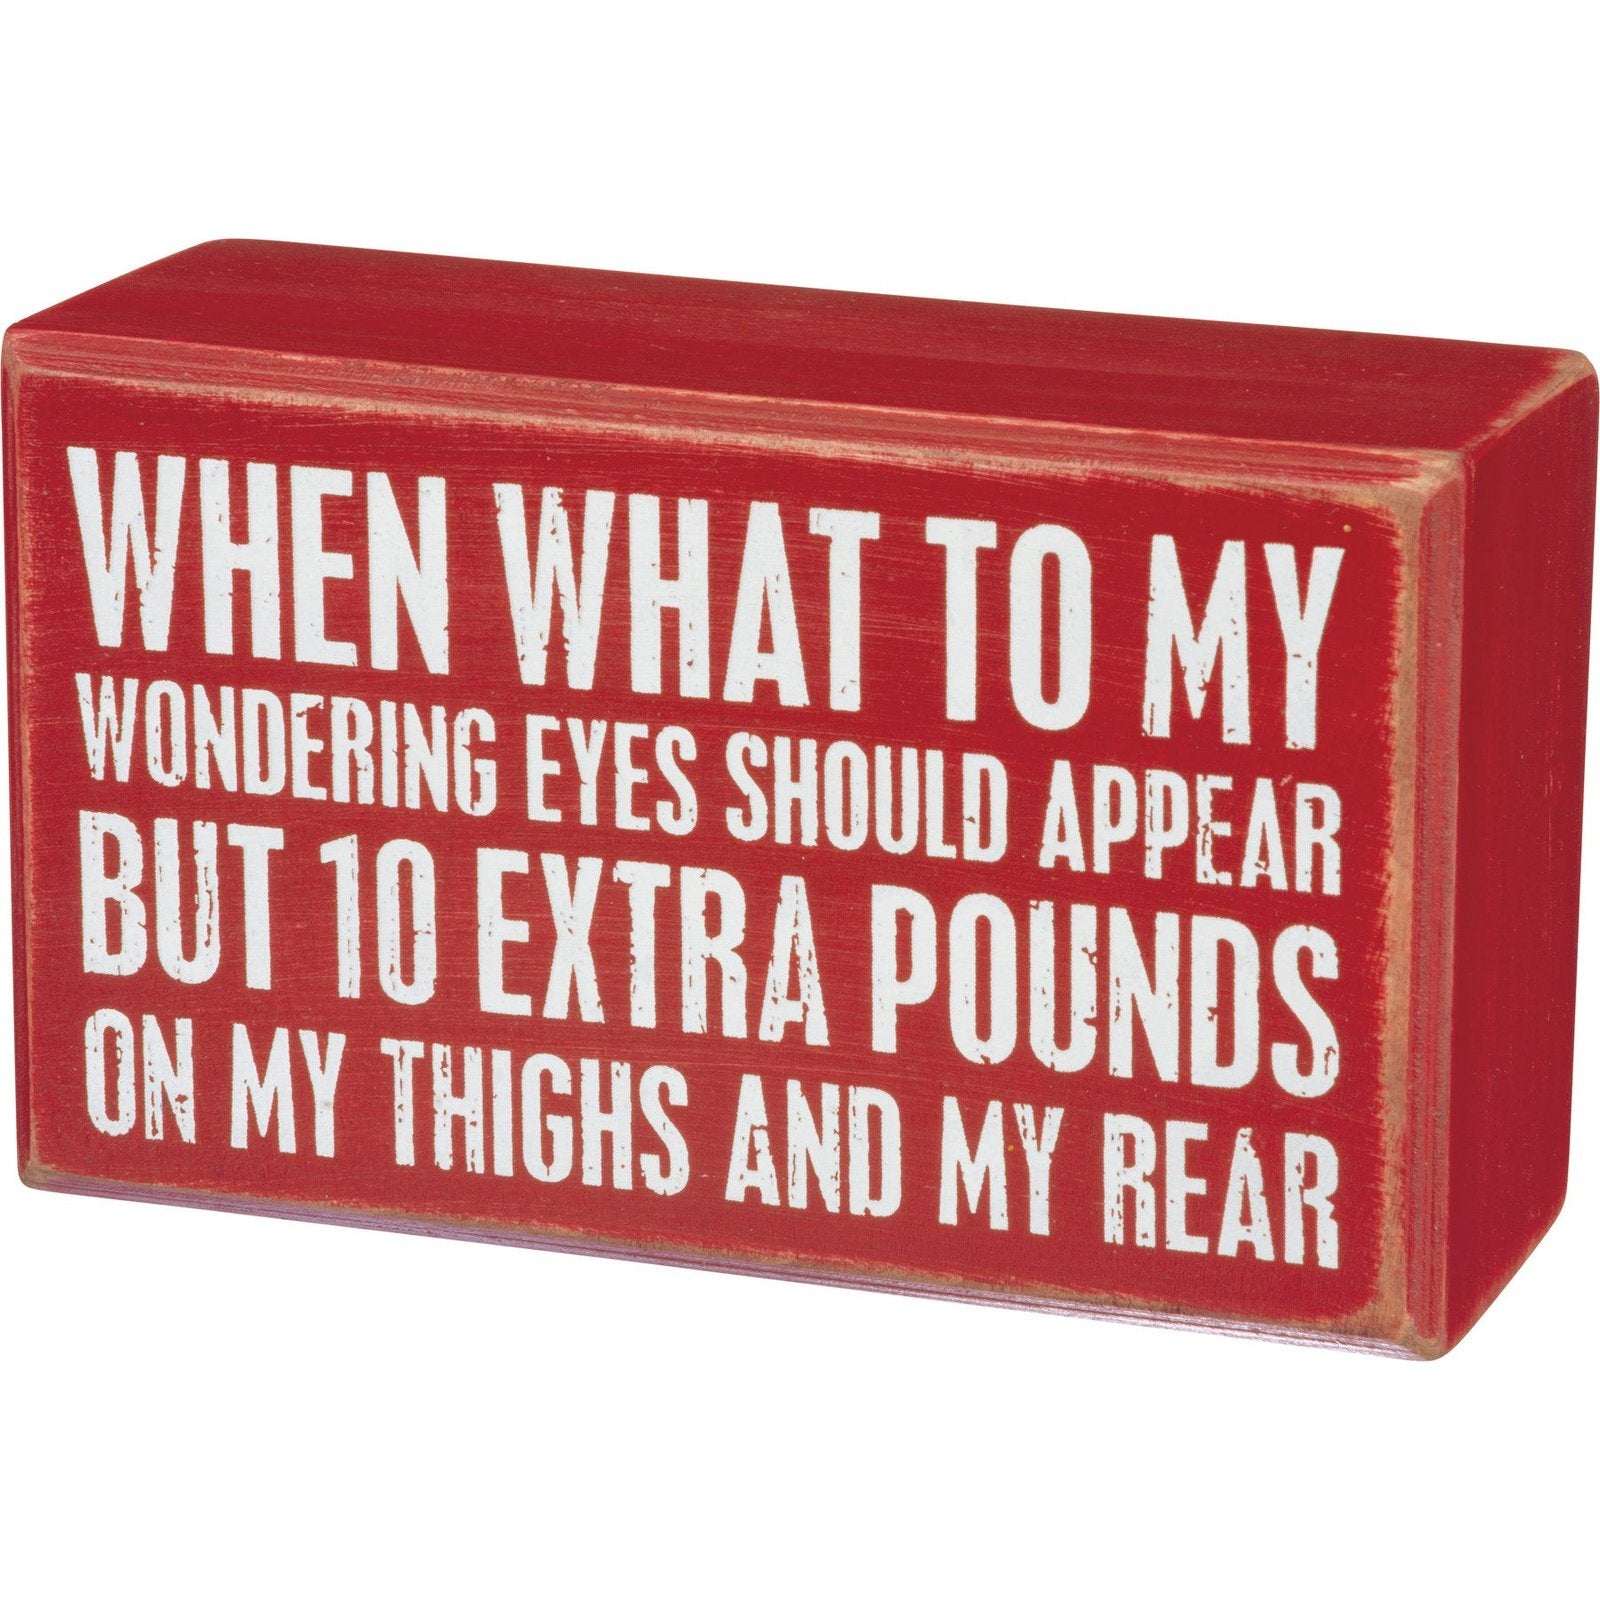 Extra Pounds Christmas Box Sign SolagoHome